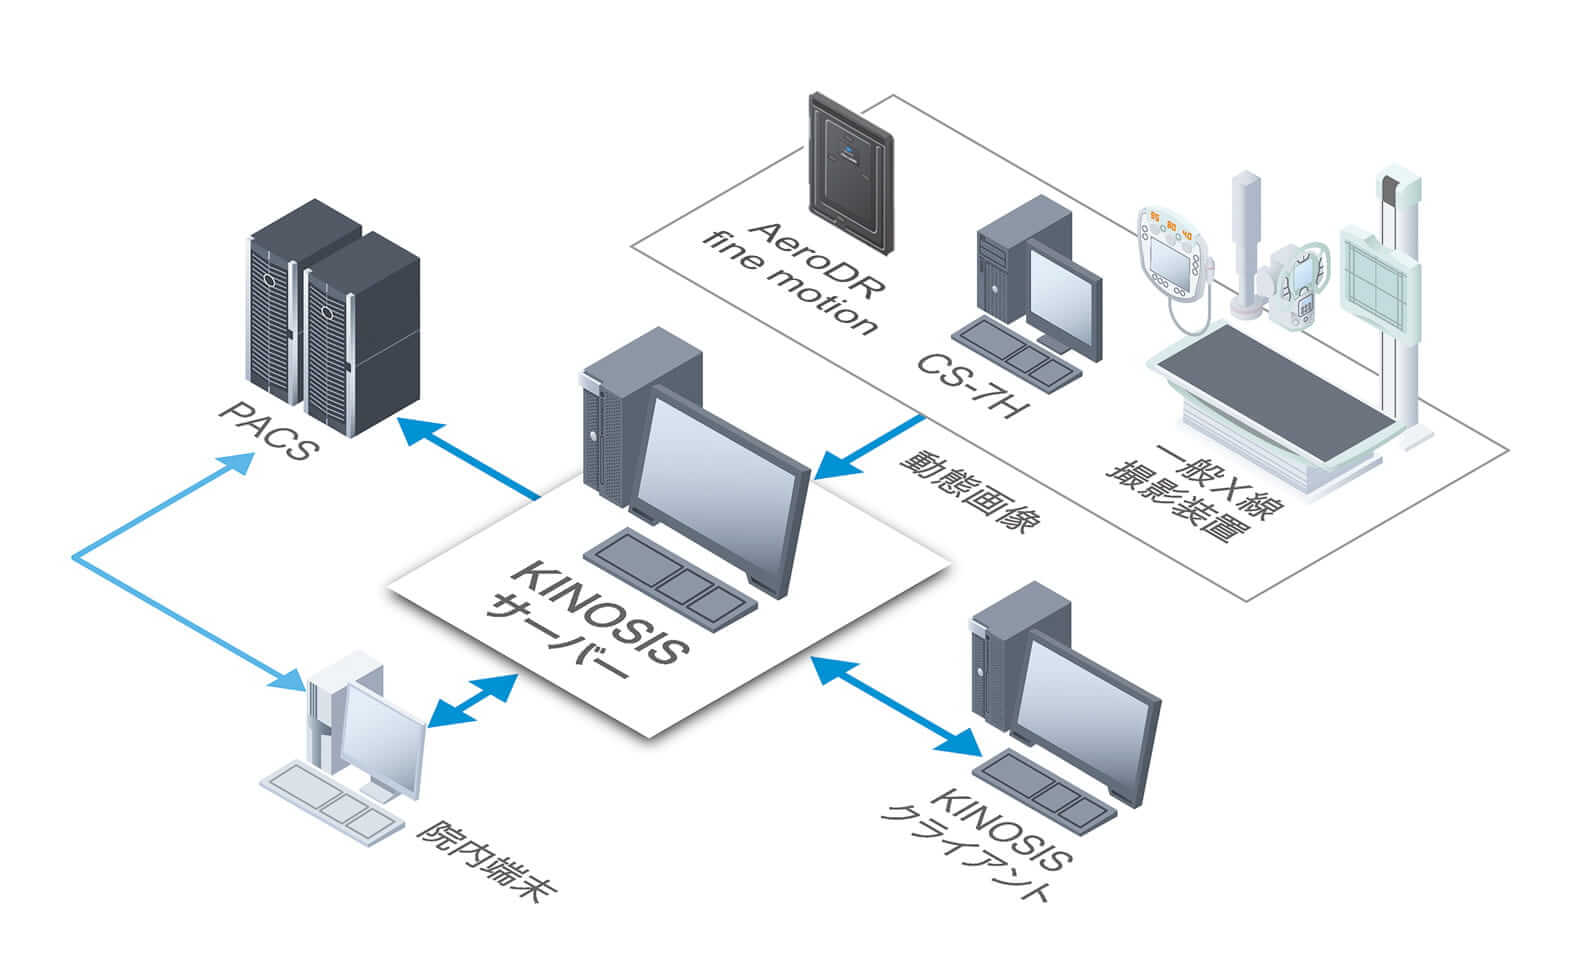 KINOSISサーバーシステム構成例